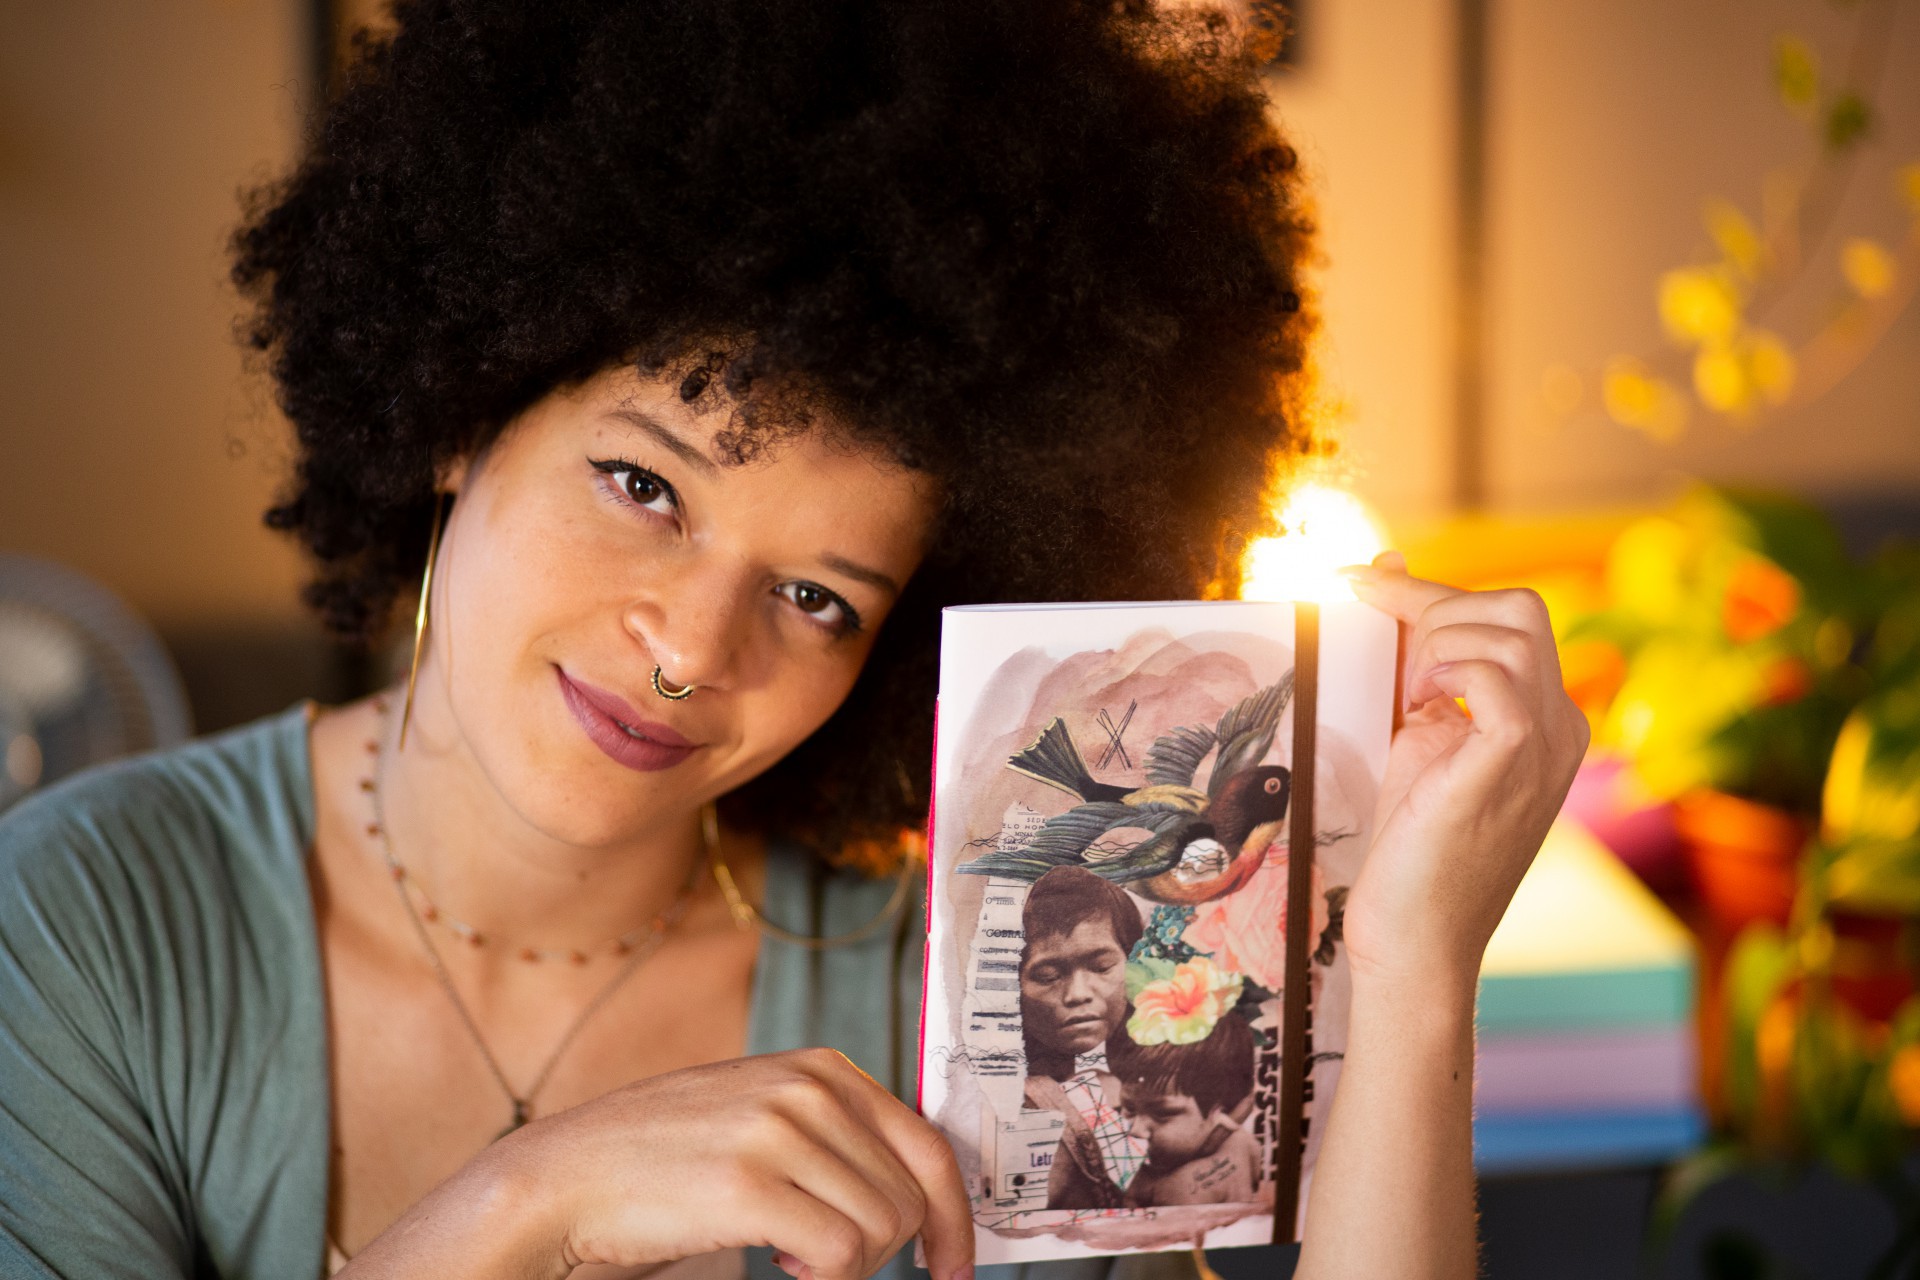 Designer e colagista, Maria Rosa cria artes com representação de mulheres, em especial mulheres pretas, que marcaram a História (Foto: Divulgação/Chapati Imagens)